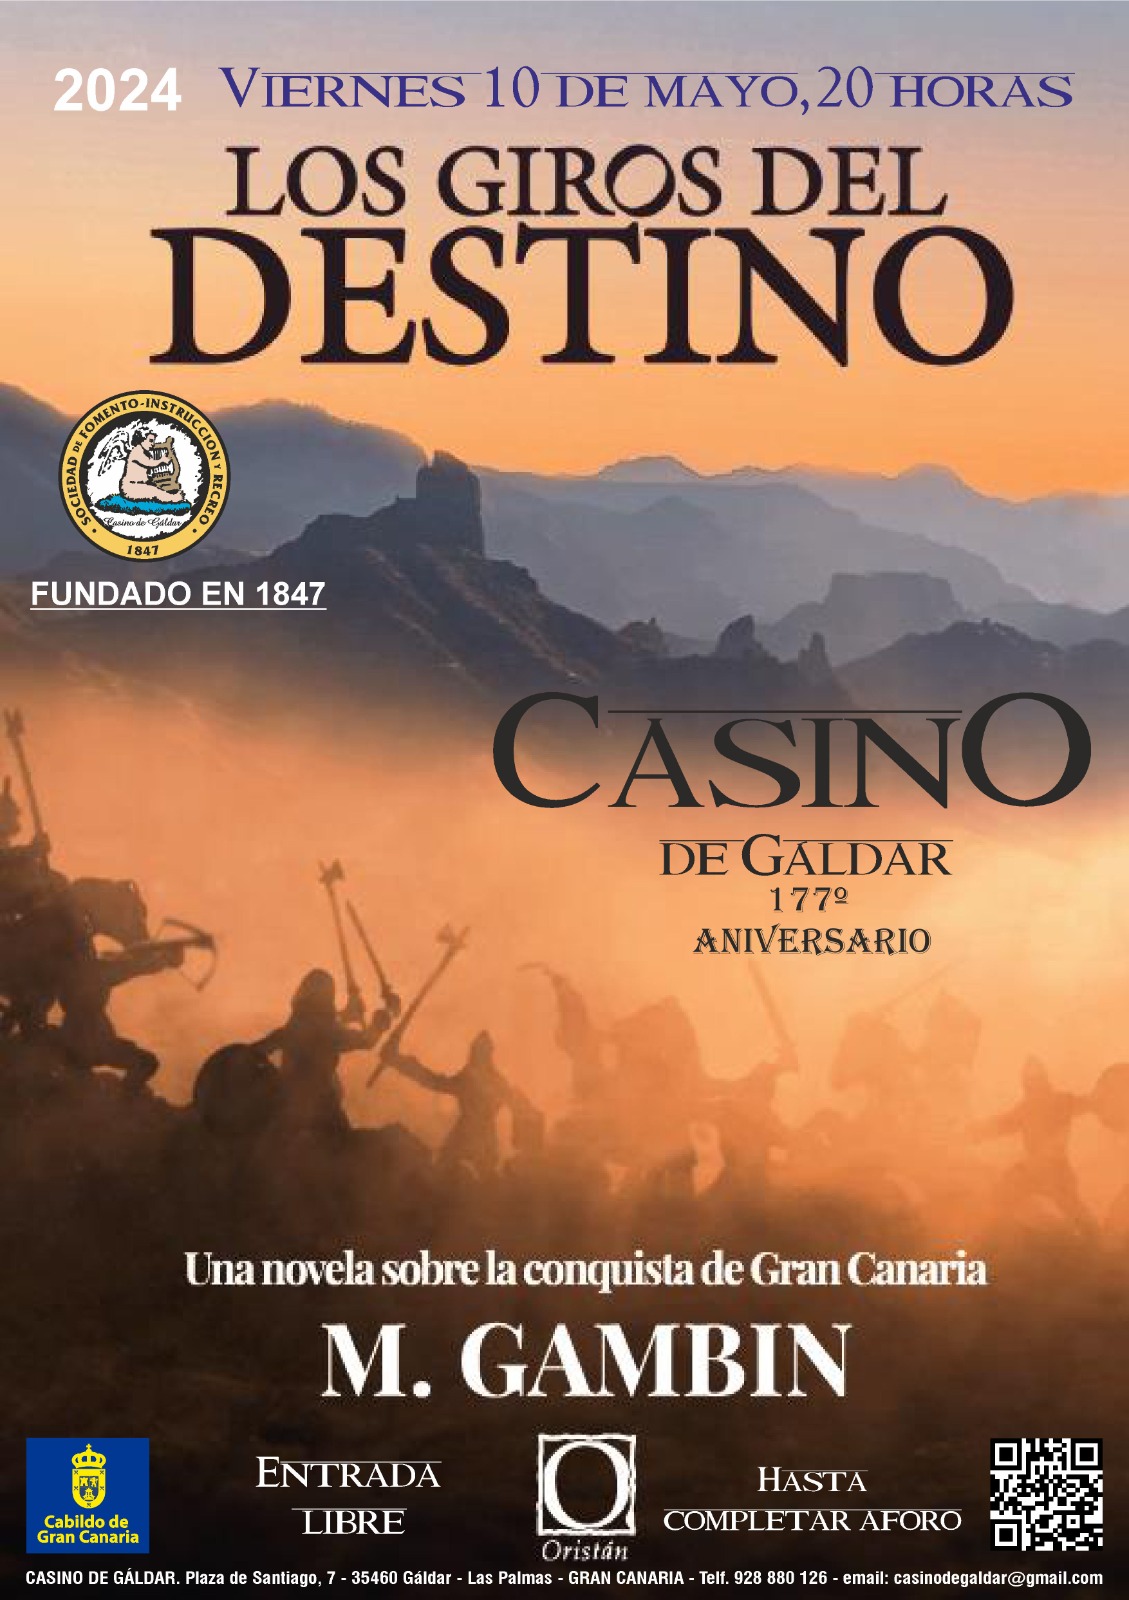 El Casino de Gáldar acoge este viernes, 10 de mayo, a las 20,00 horas, la presentación de la novela Los giros del destino